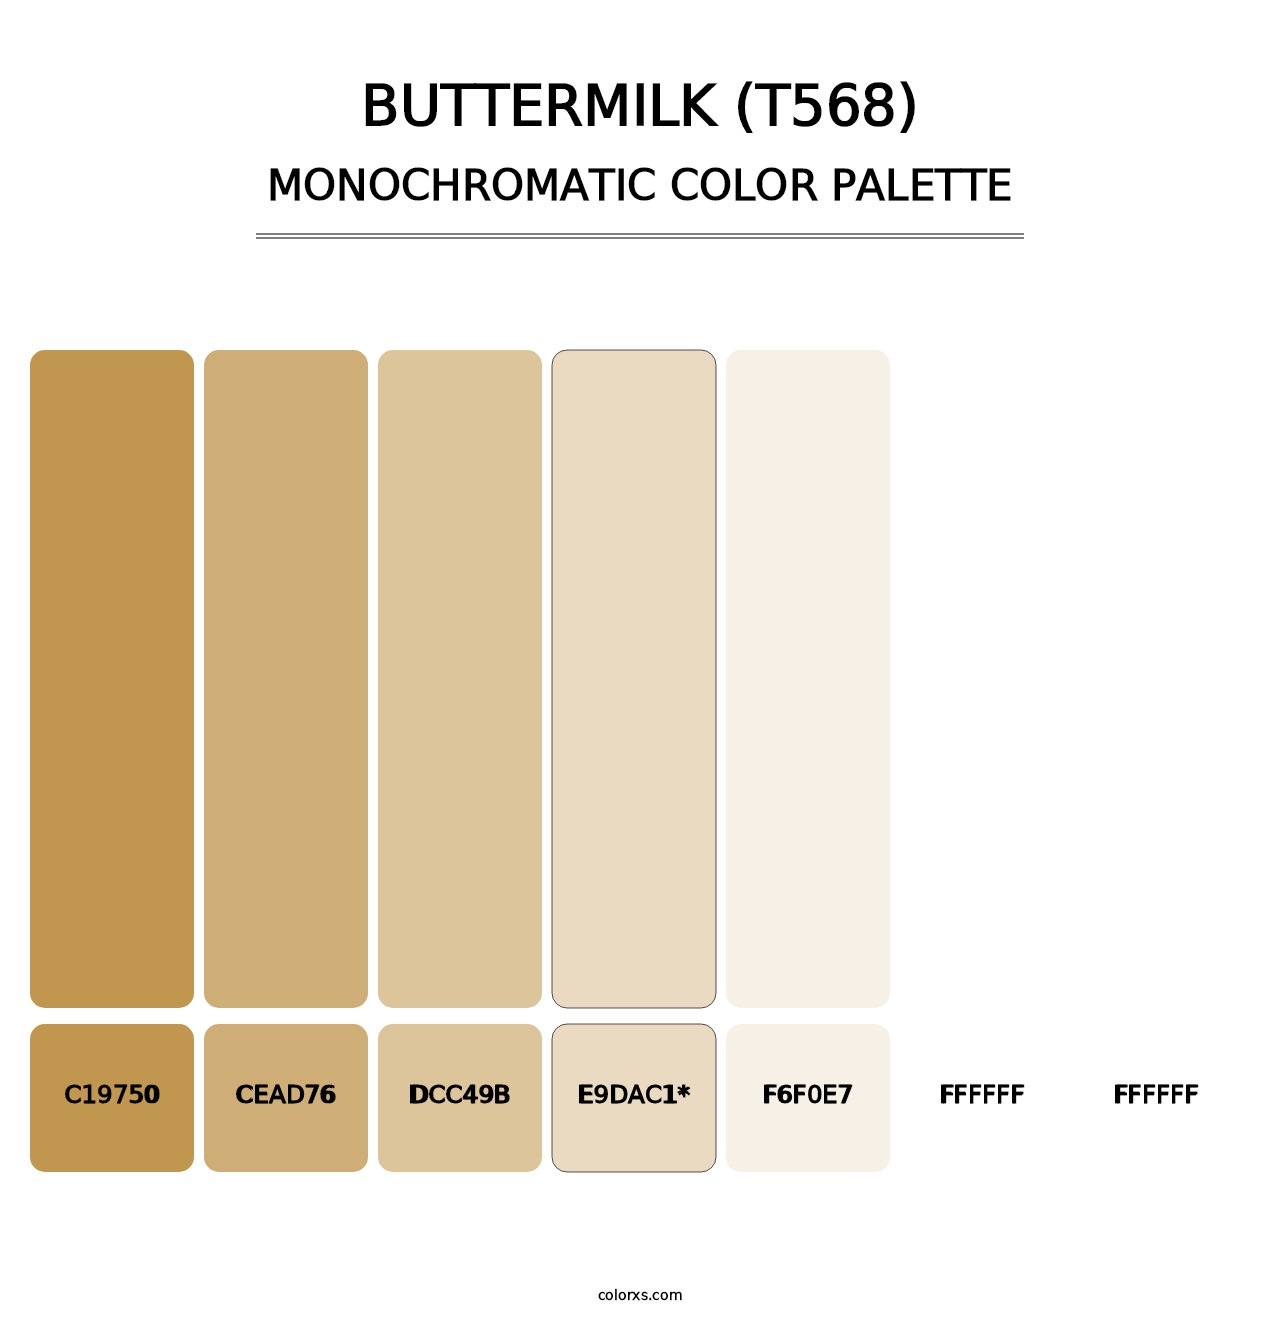 Buttermilk (T568) - Monochromatic Color Palette